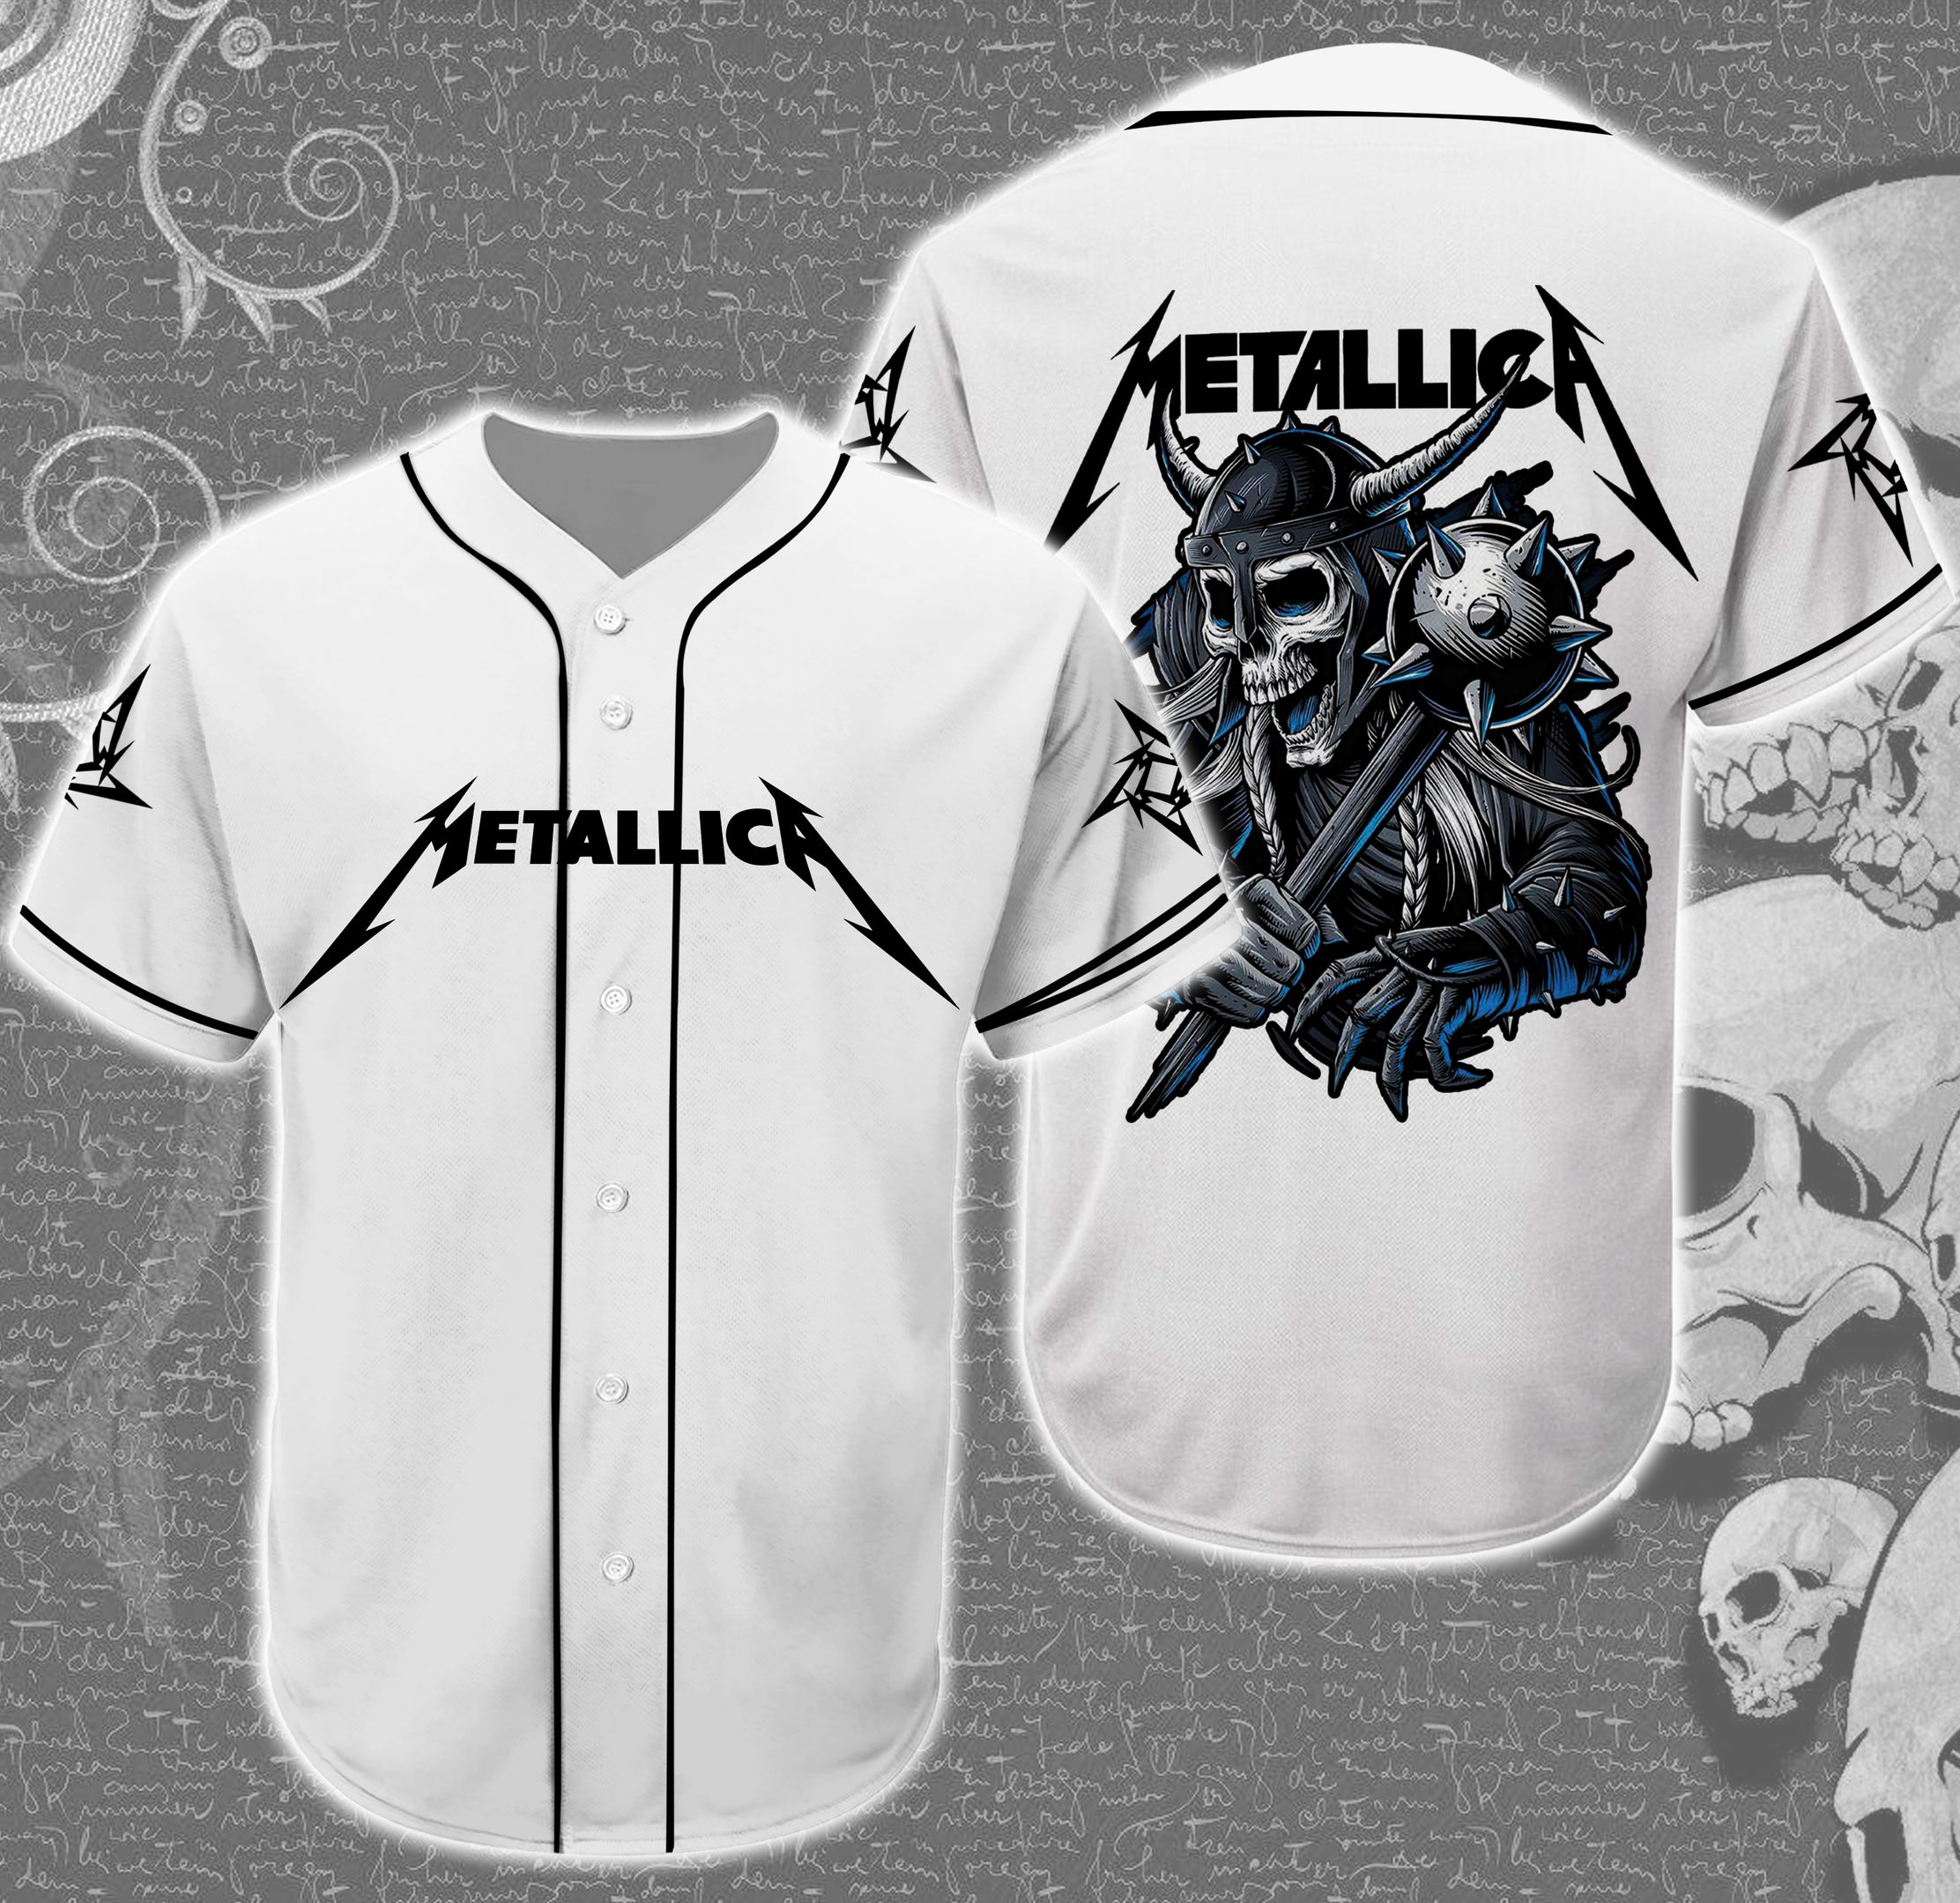 Band Metallica Skull Baseball Tee Jersey Shirt Unisex Men Women – Fit ...